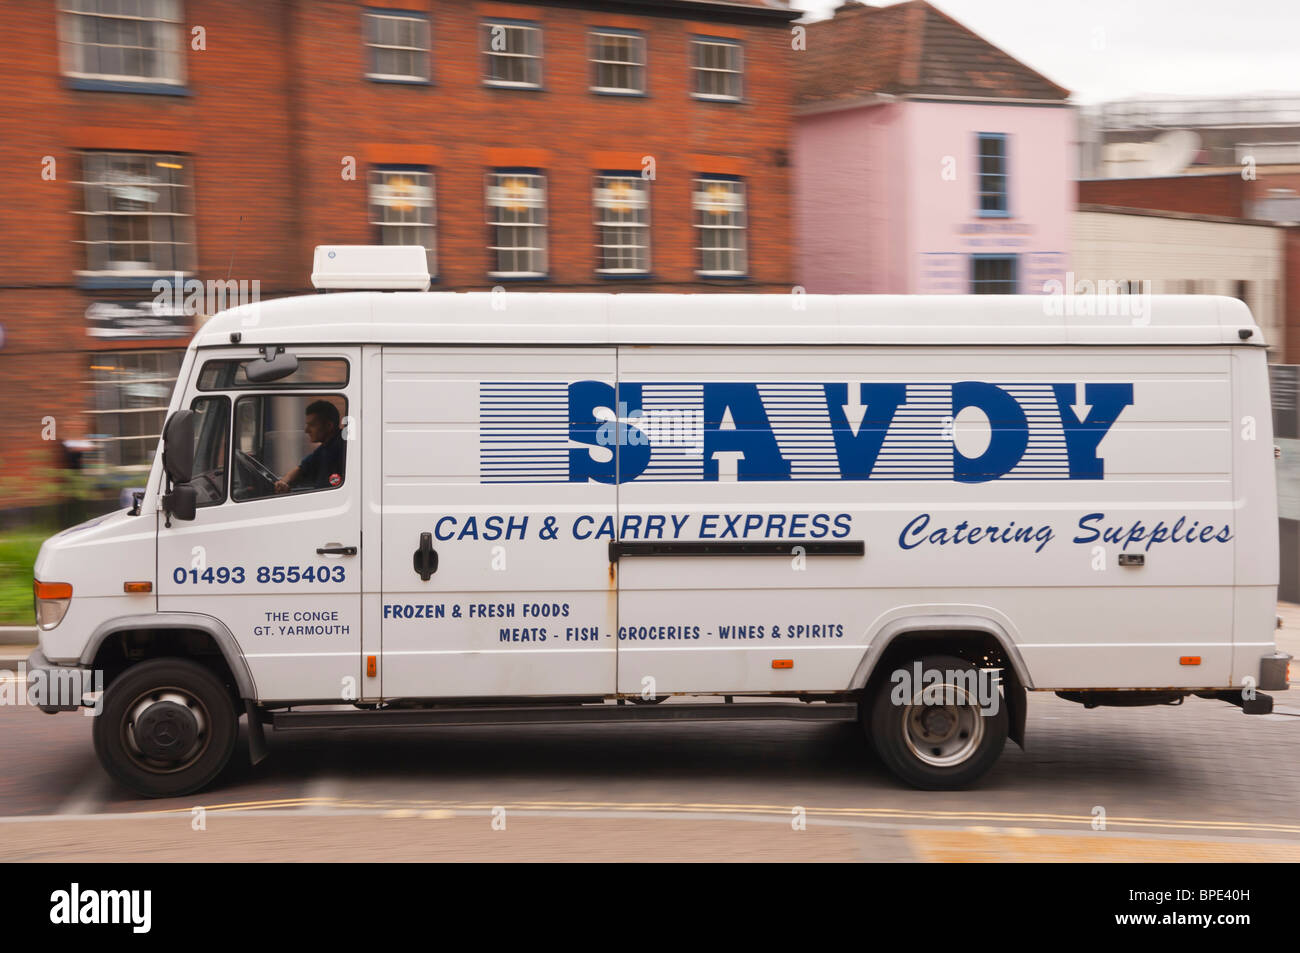 Ein Savoy catering liefert van fahren durch die Stadt und zeigt Bewegung in Norwich, Norfolk, England, Großbritannien, Uk Stockfoto